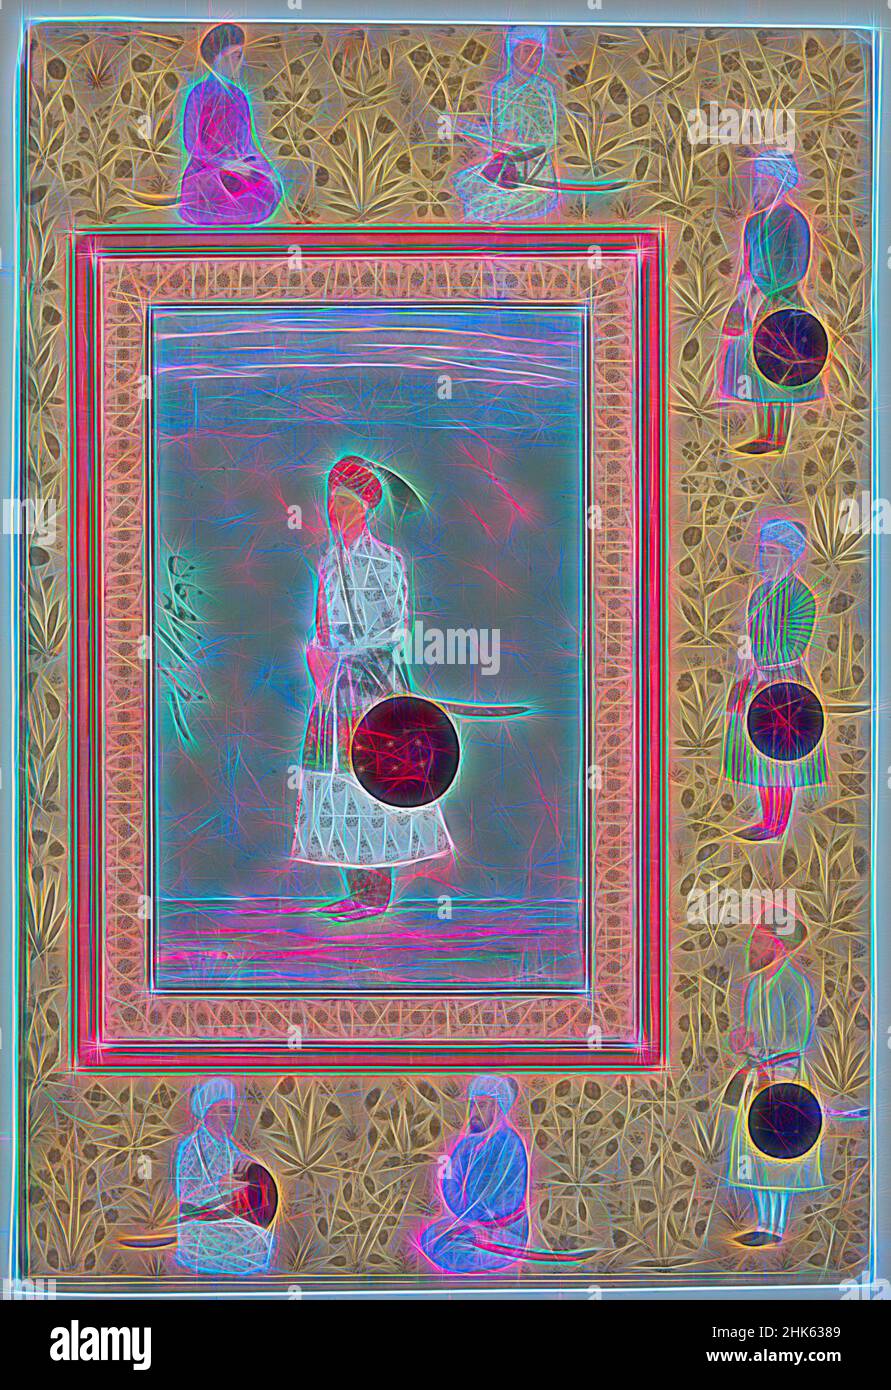 Ispirato da Page from the Late Shah Jahan Album, indiano, regno di Shah Jahan, 1627–1657, periodo Mughal, 1526–1858, c.1650–1660, Inchiostro, acquerello opaco, e oro su carta, fatto in India, Asia, disegni & acquerelli, dipinti, immagine: 8 1/16 x 5 1/8 pollici (20,5 x 13 cm, riimmaginato da Artotop. L'arte classica reinventata con un tocco moderno. Design di calda e allegra luminosità e di raggi di luce. La fotografia si ispira al surrealismo e al futurismo, abbracciando l'energia dinamica della tecnologia moderna, del movimento, della velocità e rivoluzionando la cultura Foto Stock